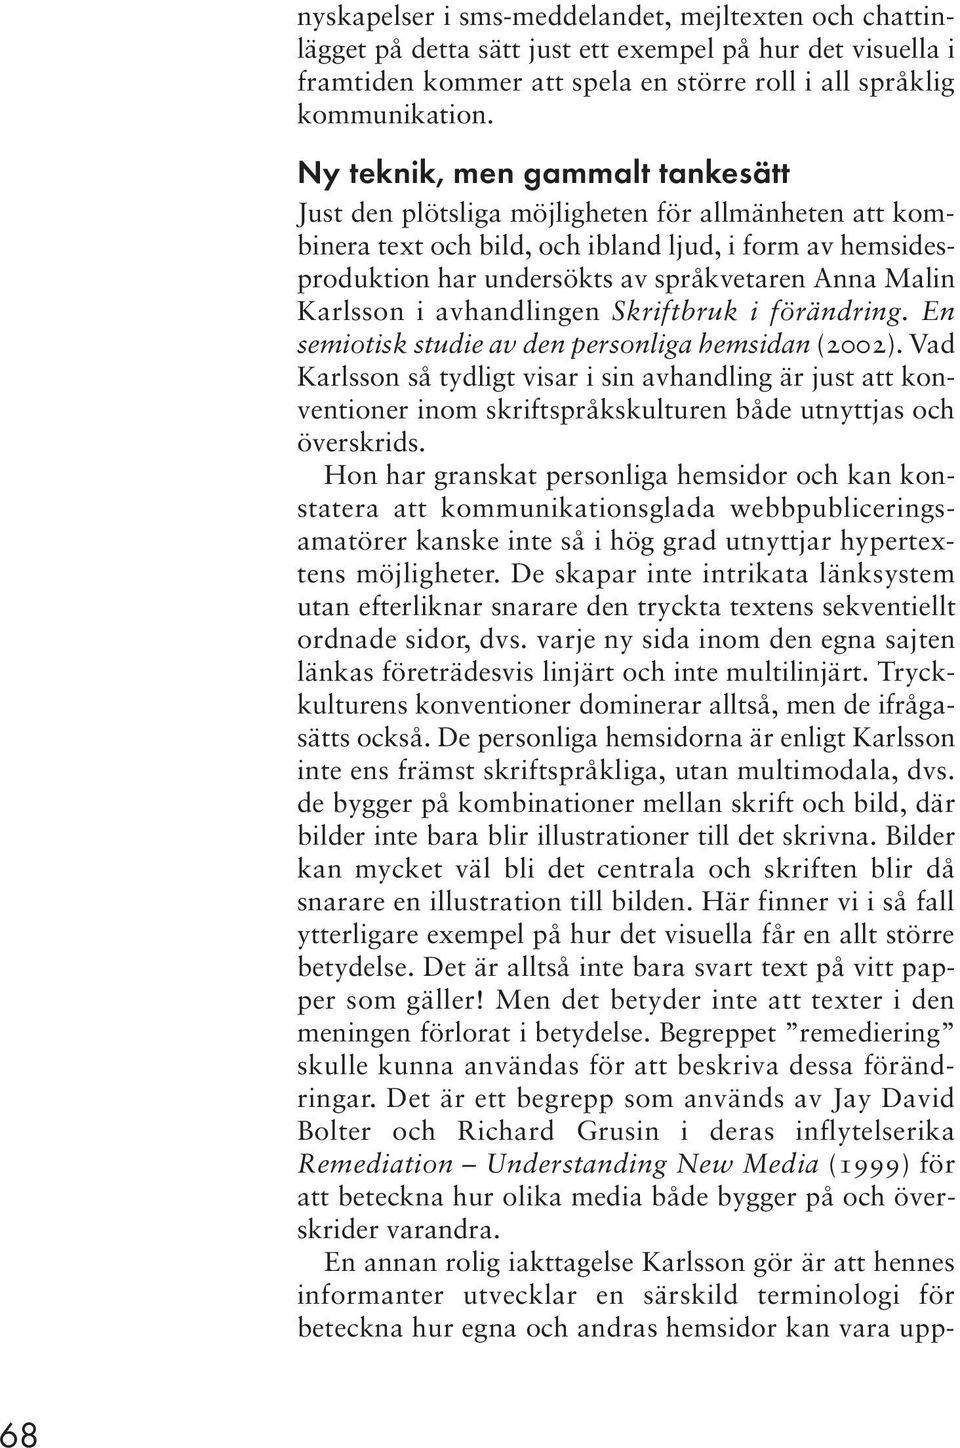 Karlsson i avhandlingen Skriftbruk i förändring. En semiotisk studie av den personliga hemsidan (2002).